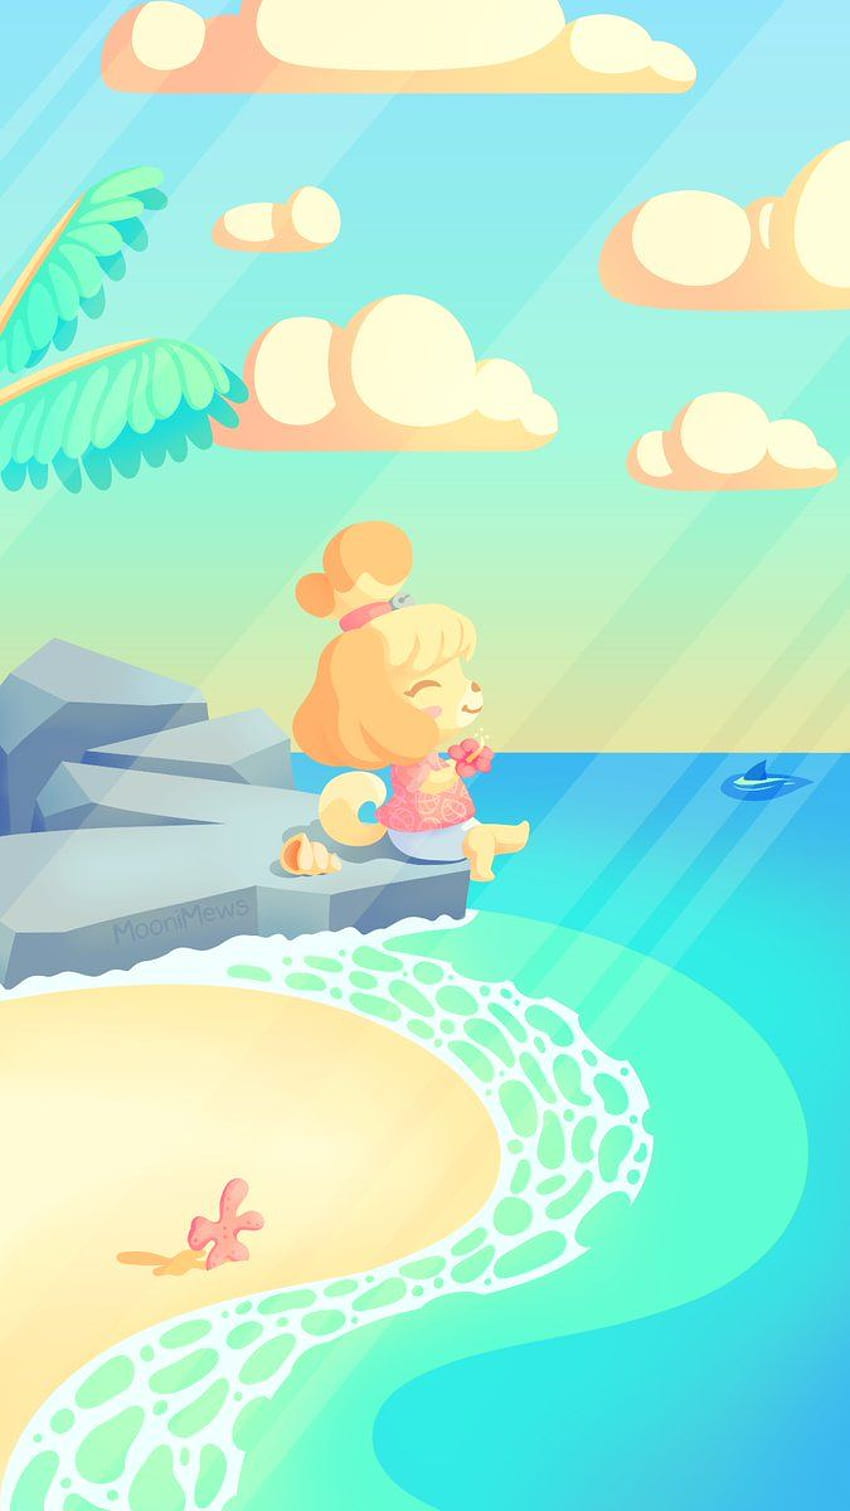 MooniMews. bIm - Телефон на Animal Crossing New Horizons, който направих, за да дам на Изабел момент за почивка, преди играта да е тук :) HD тапет за телефон